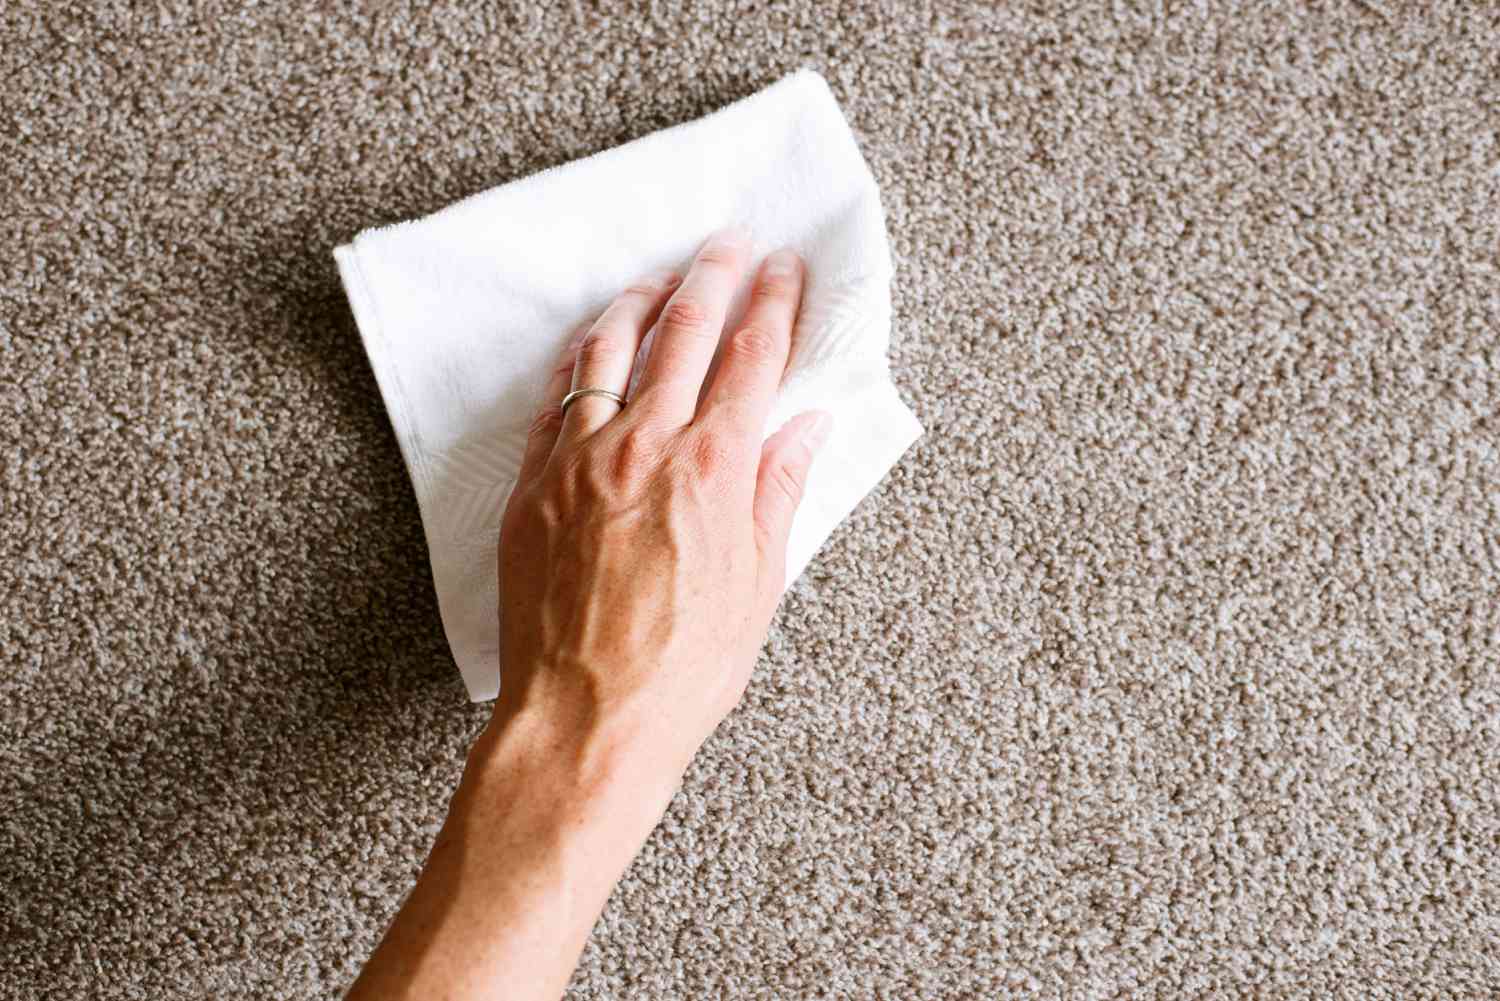 Derramamento de líquido sobre o carpete bronzeado apagado com papel toalha